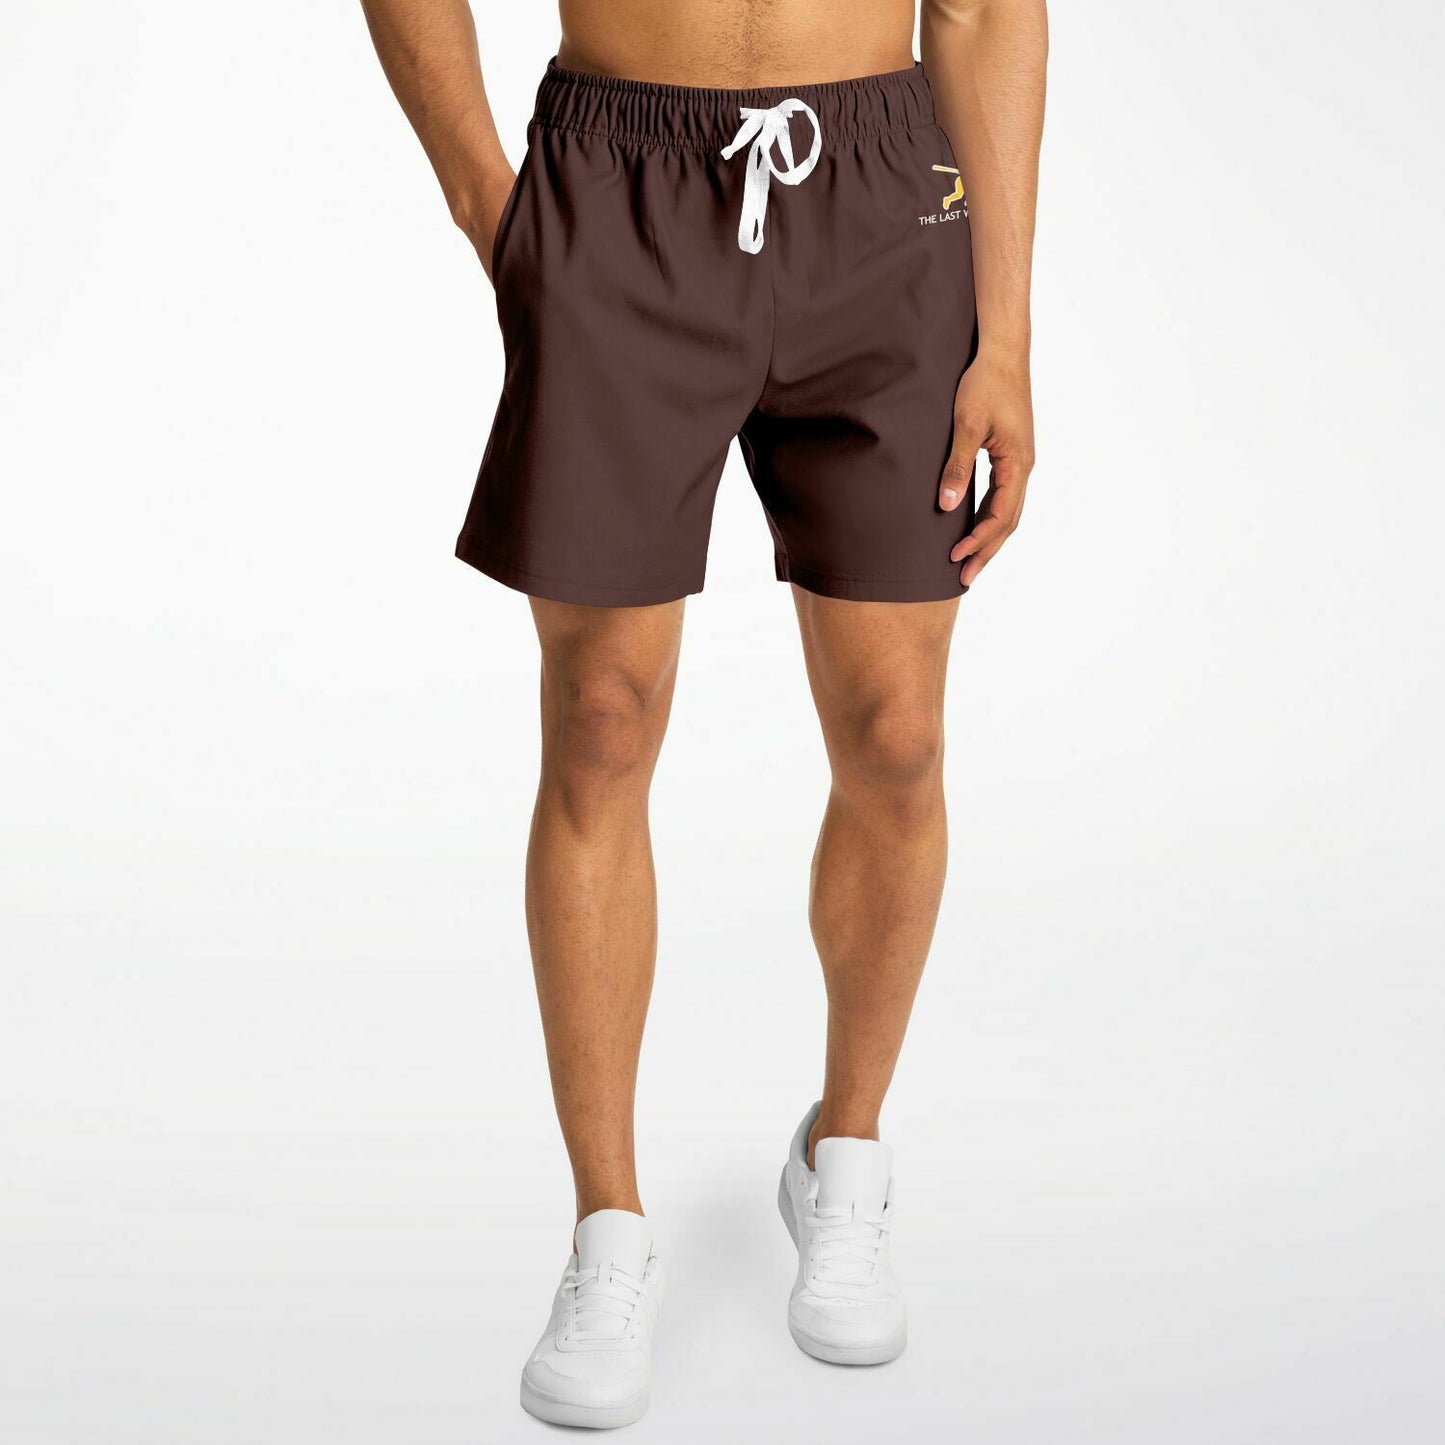 San Diego Men's Brown Shorts